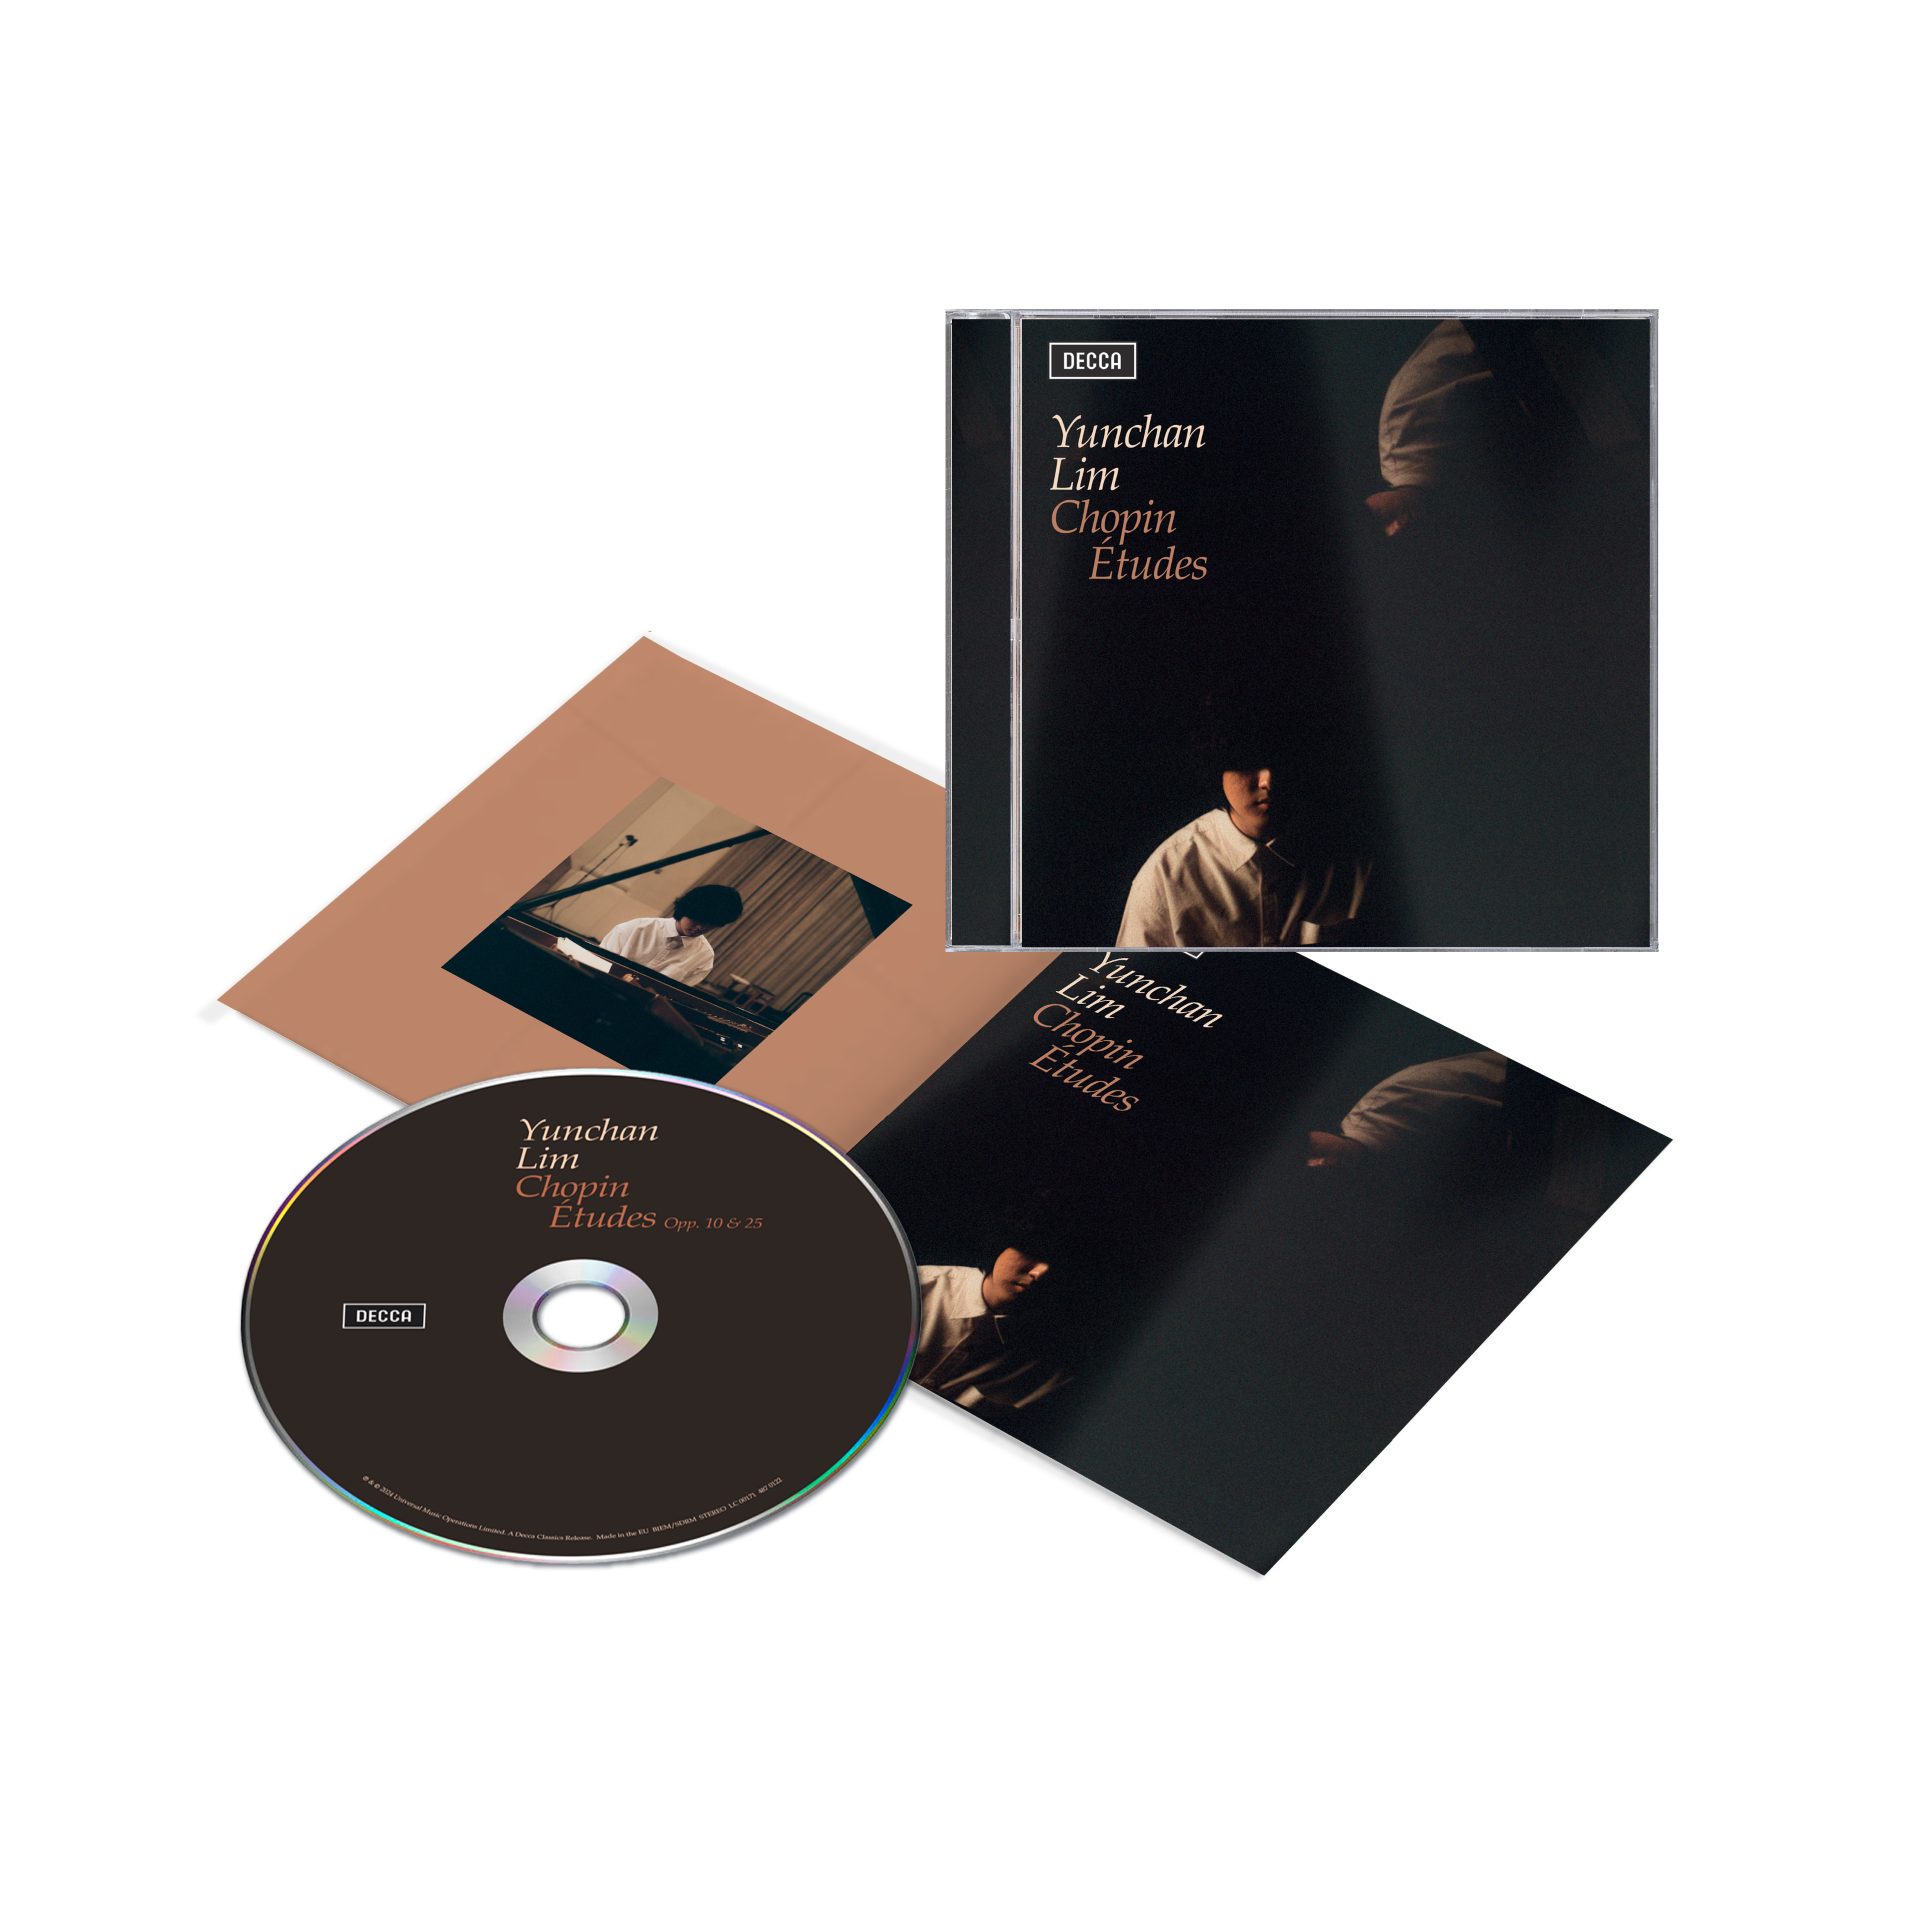 Yunchan Lim - Chopin Études: CD